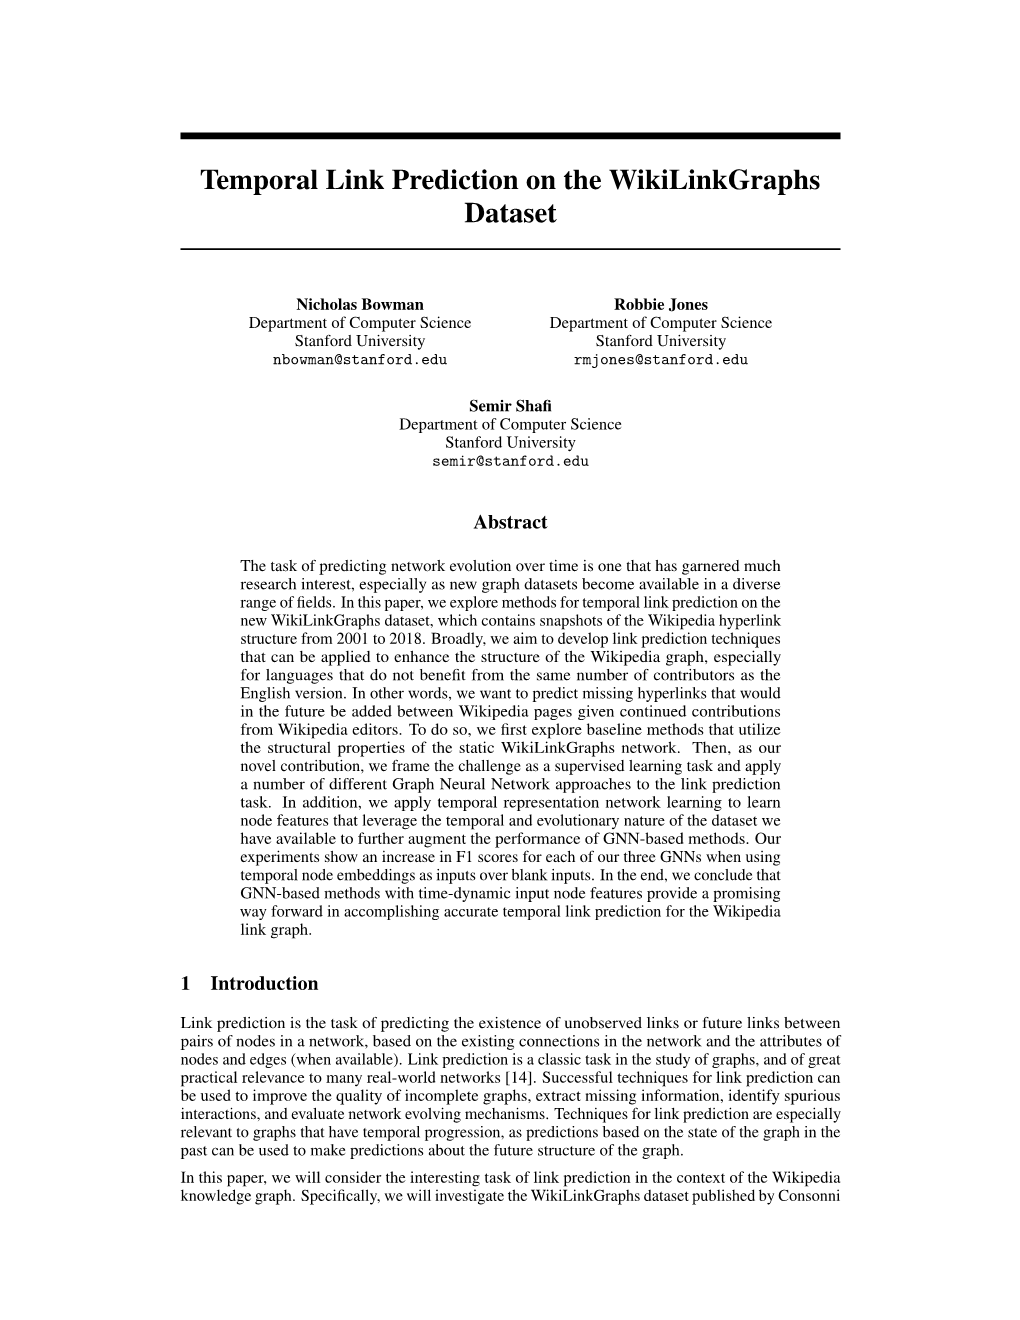 Temporal Link Prediction on the Wikilinkgraphs Dataset